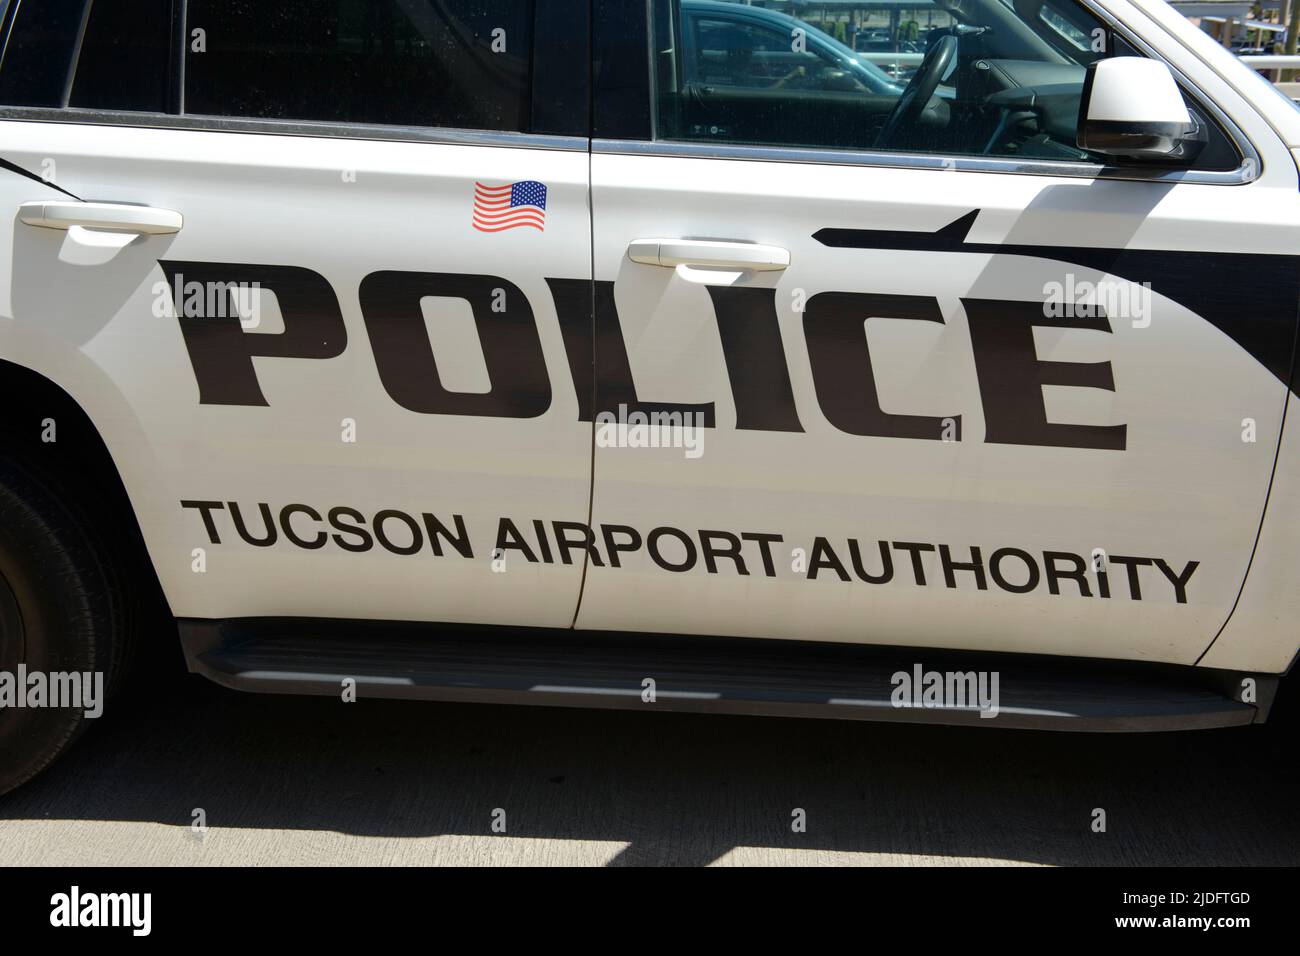 Mangel und White Tucson Airport Authority Polizeifahrzeug Stockfoto